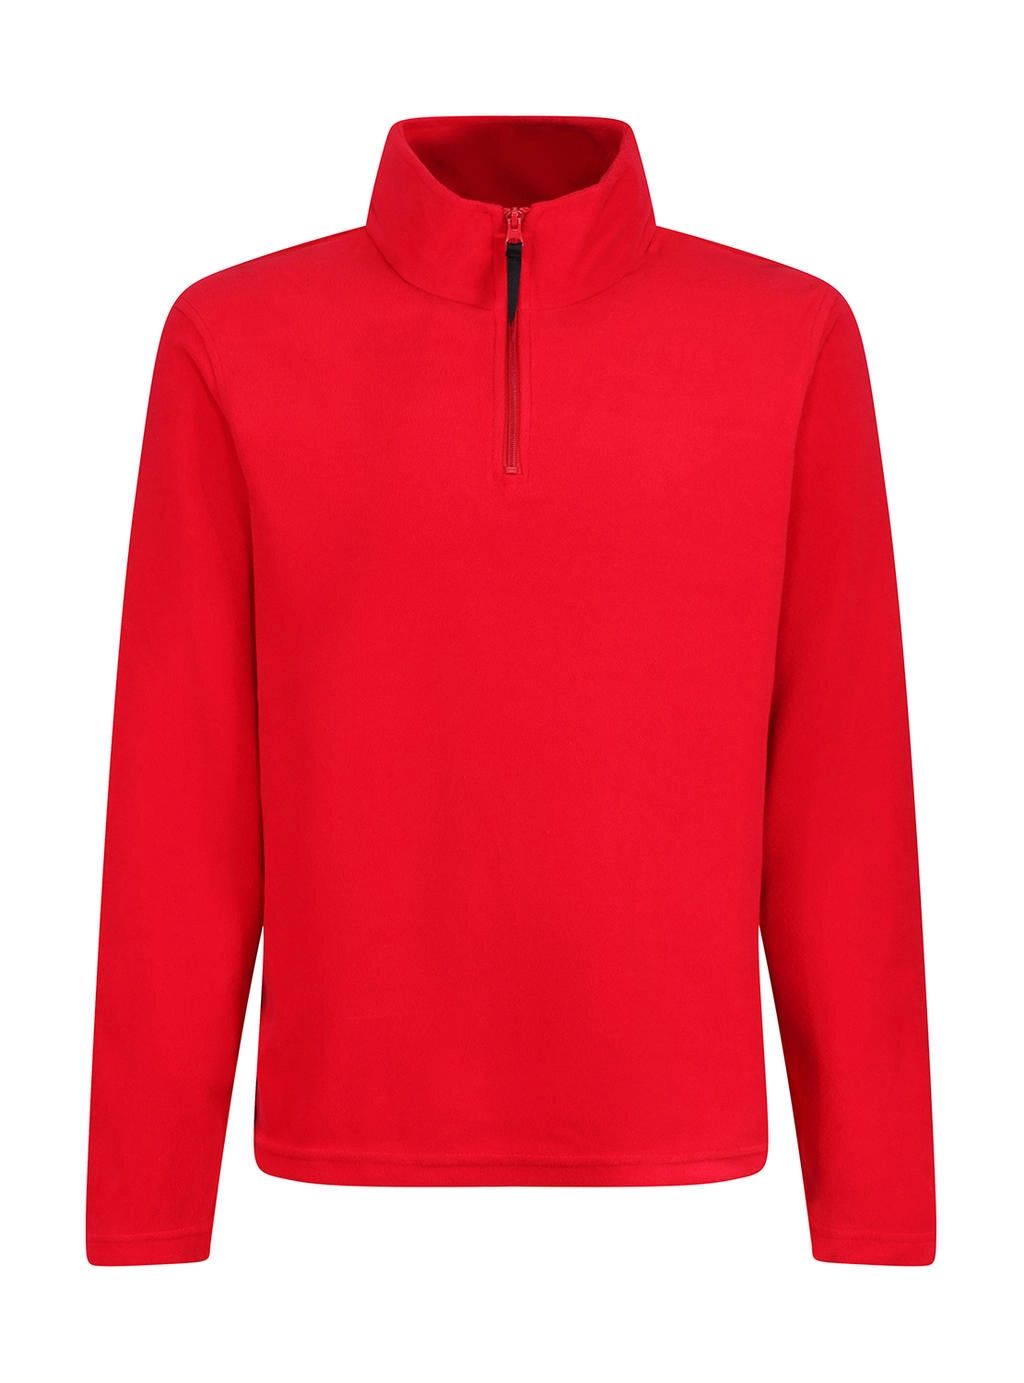 Micro Zip Neck Fleece zum Besticken und Bedrucken in der Farbe Classic Red mit Ihren Logo, Schriftzug oder Motiv.